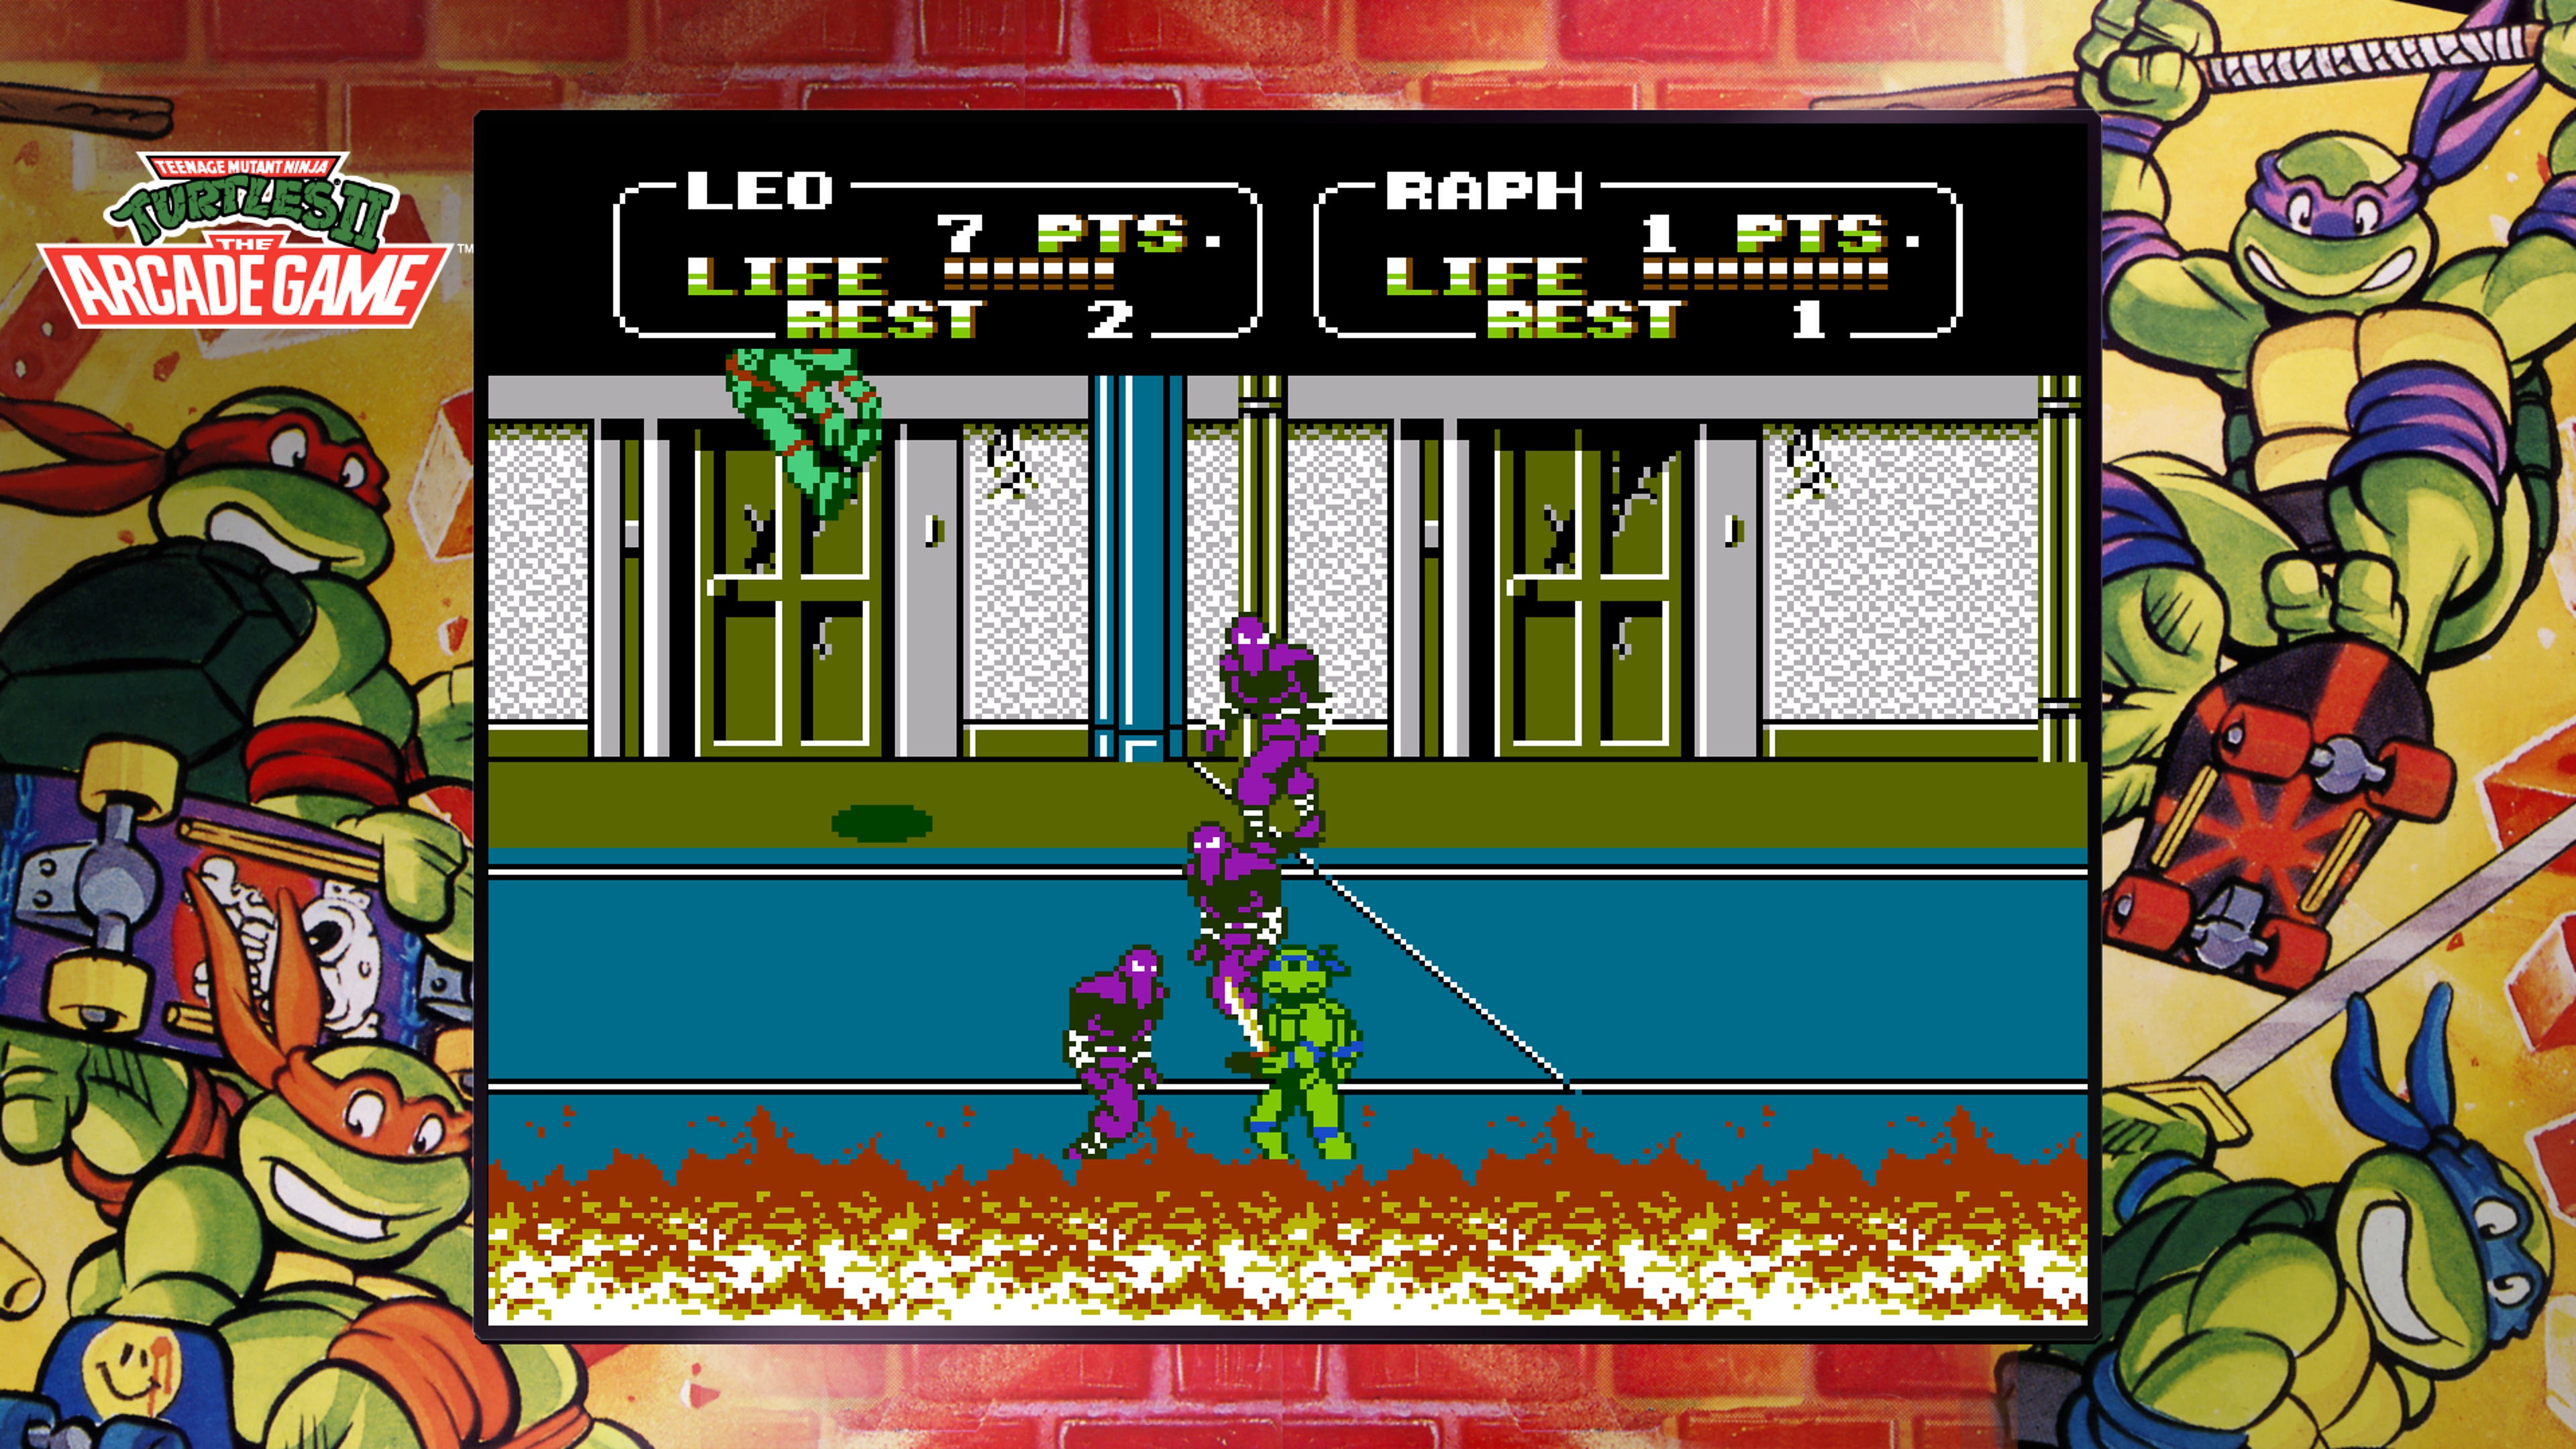 لقطة شاشة من Teenage Mutant Ninja Turtles Collection - The Arcade Game تظهر ليوناردو وهو يقاتل Foot Clan